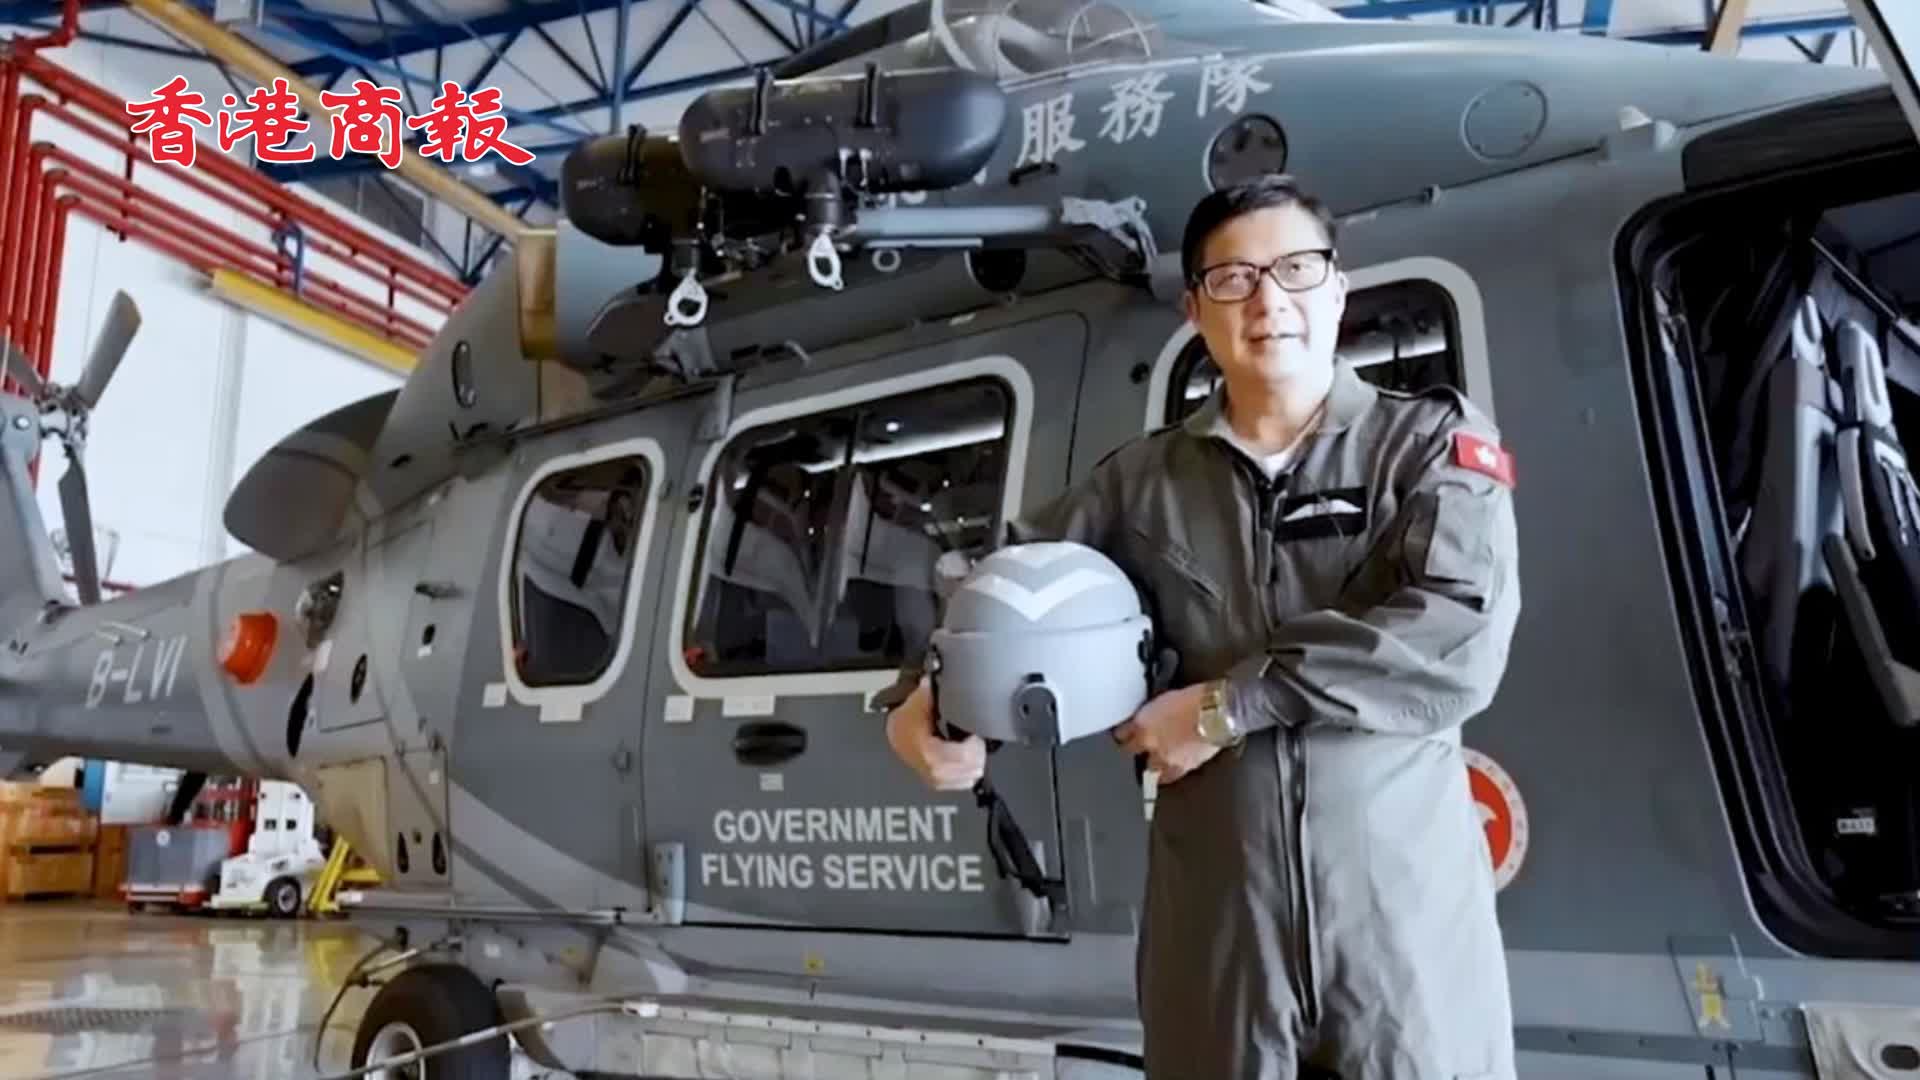 有片 | 鄧炳強出鏡介紹「獵豹直升機」 多種救援裝備一應俱全